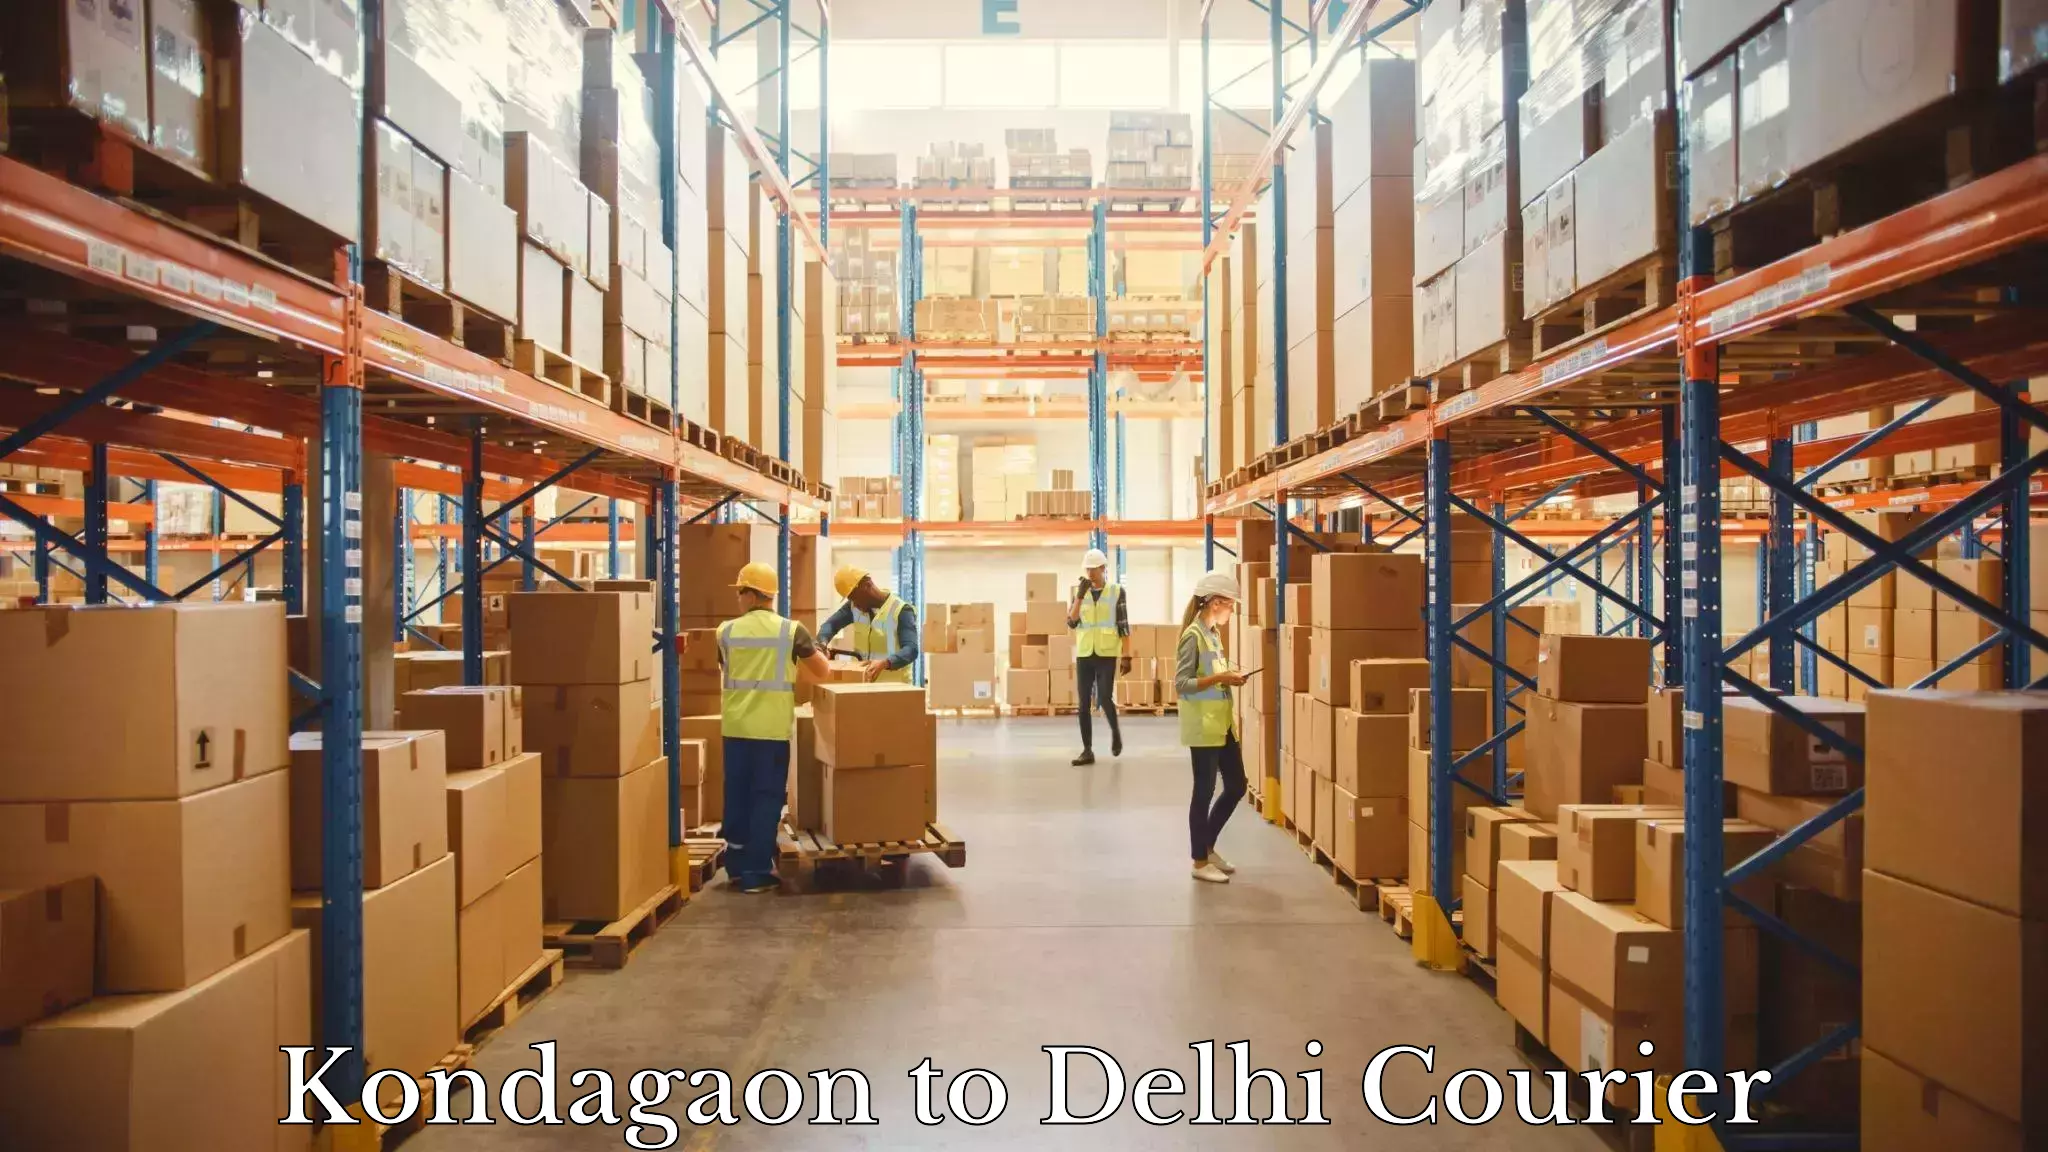 Efficient parcel service Kondagaon to NCR